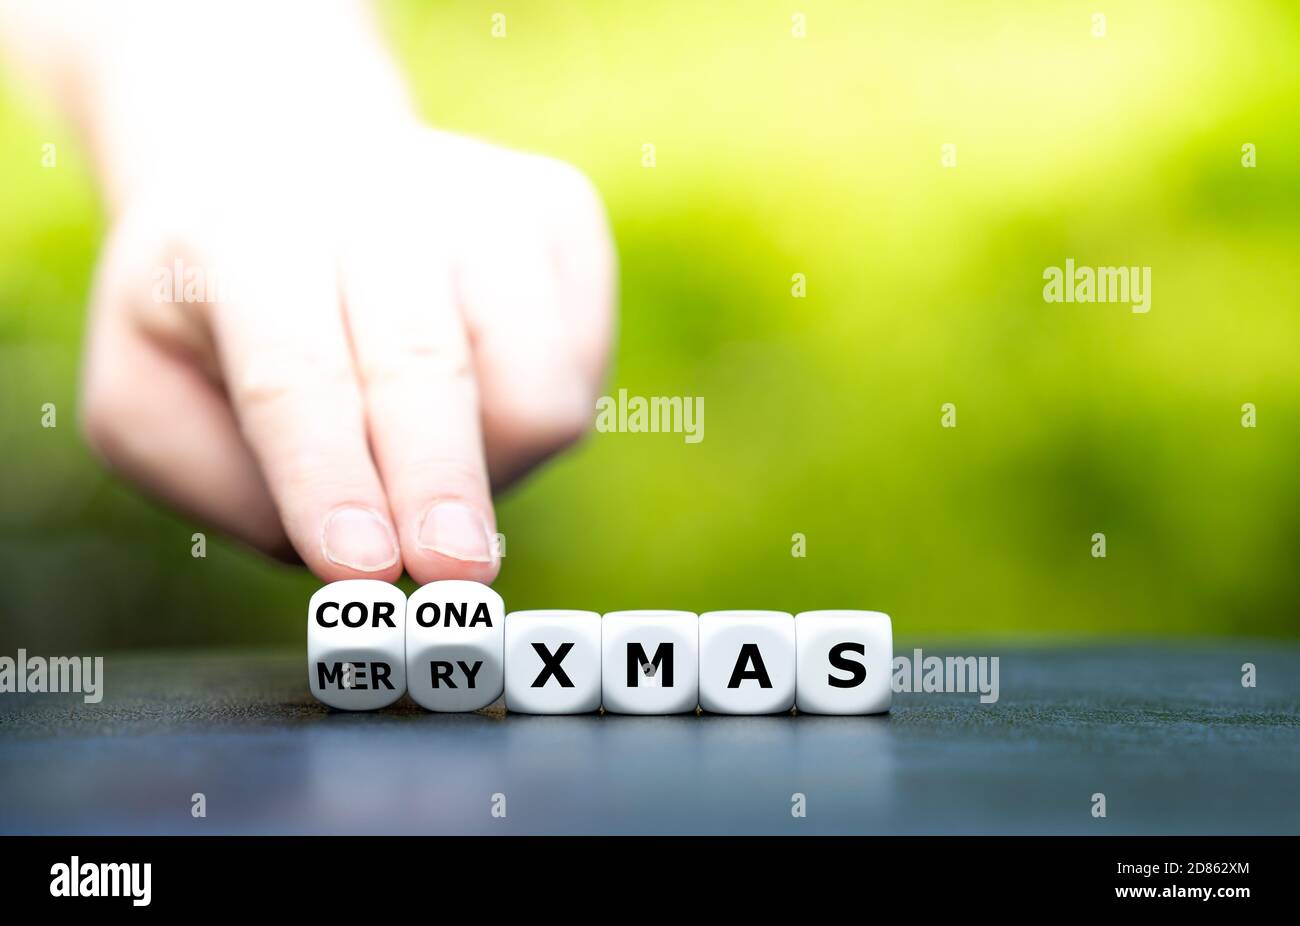 Simbolo di una corona ha influenzato il Natale. La mano trasforma i dadi e cambia l'espressione 'Merry xmas' in 'corona xmas'. Foto Stock